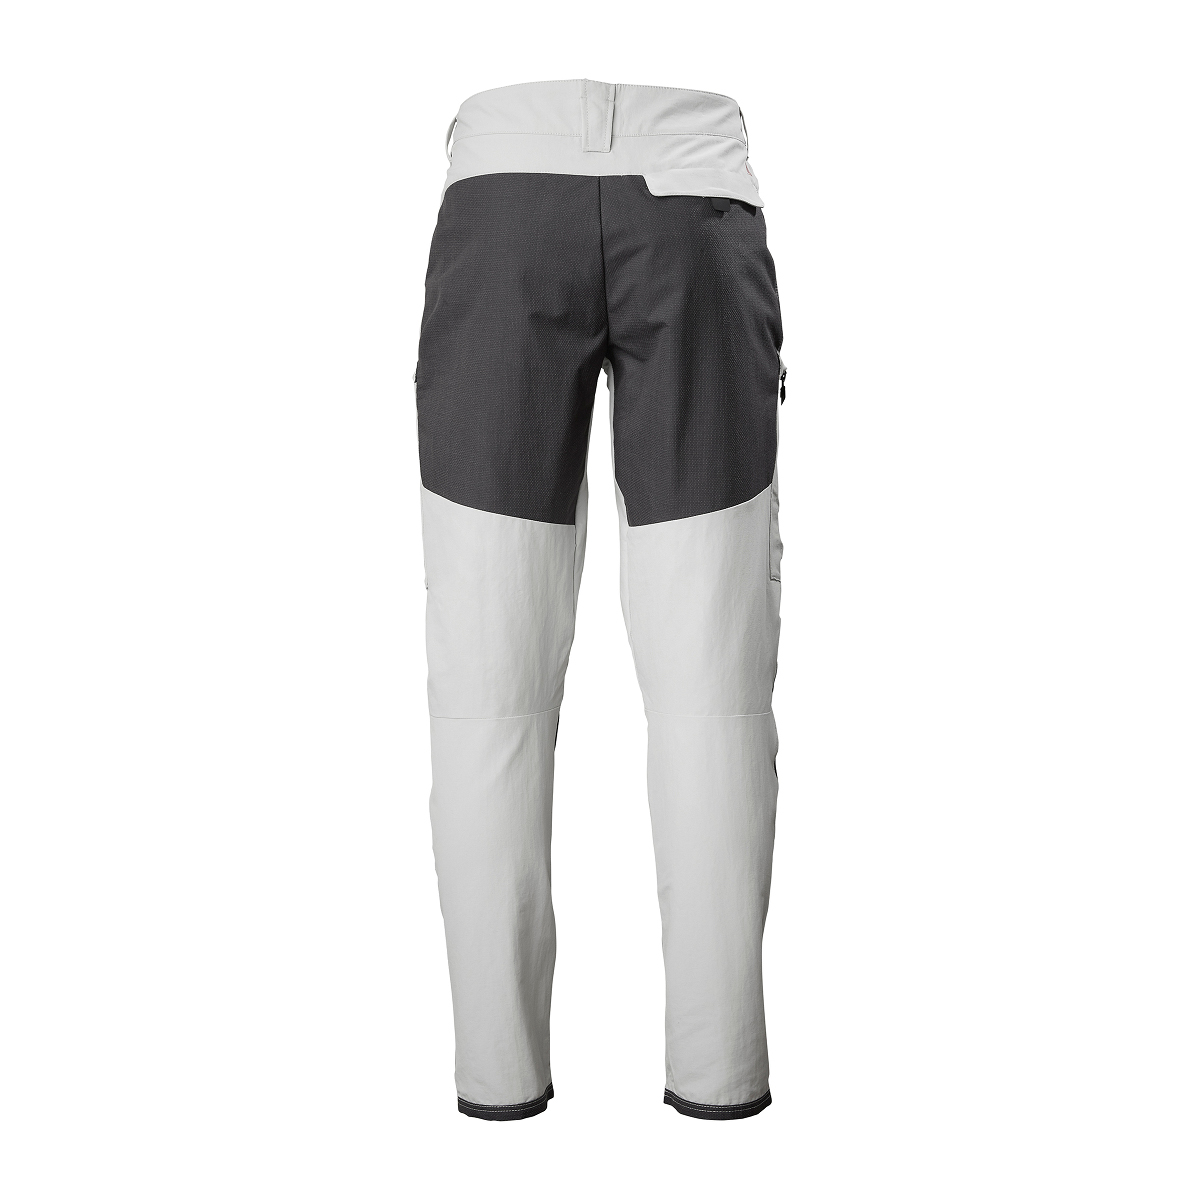 Musto Evolution Performance pantalon de voile 2.0 homme gris clair, taille 32